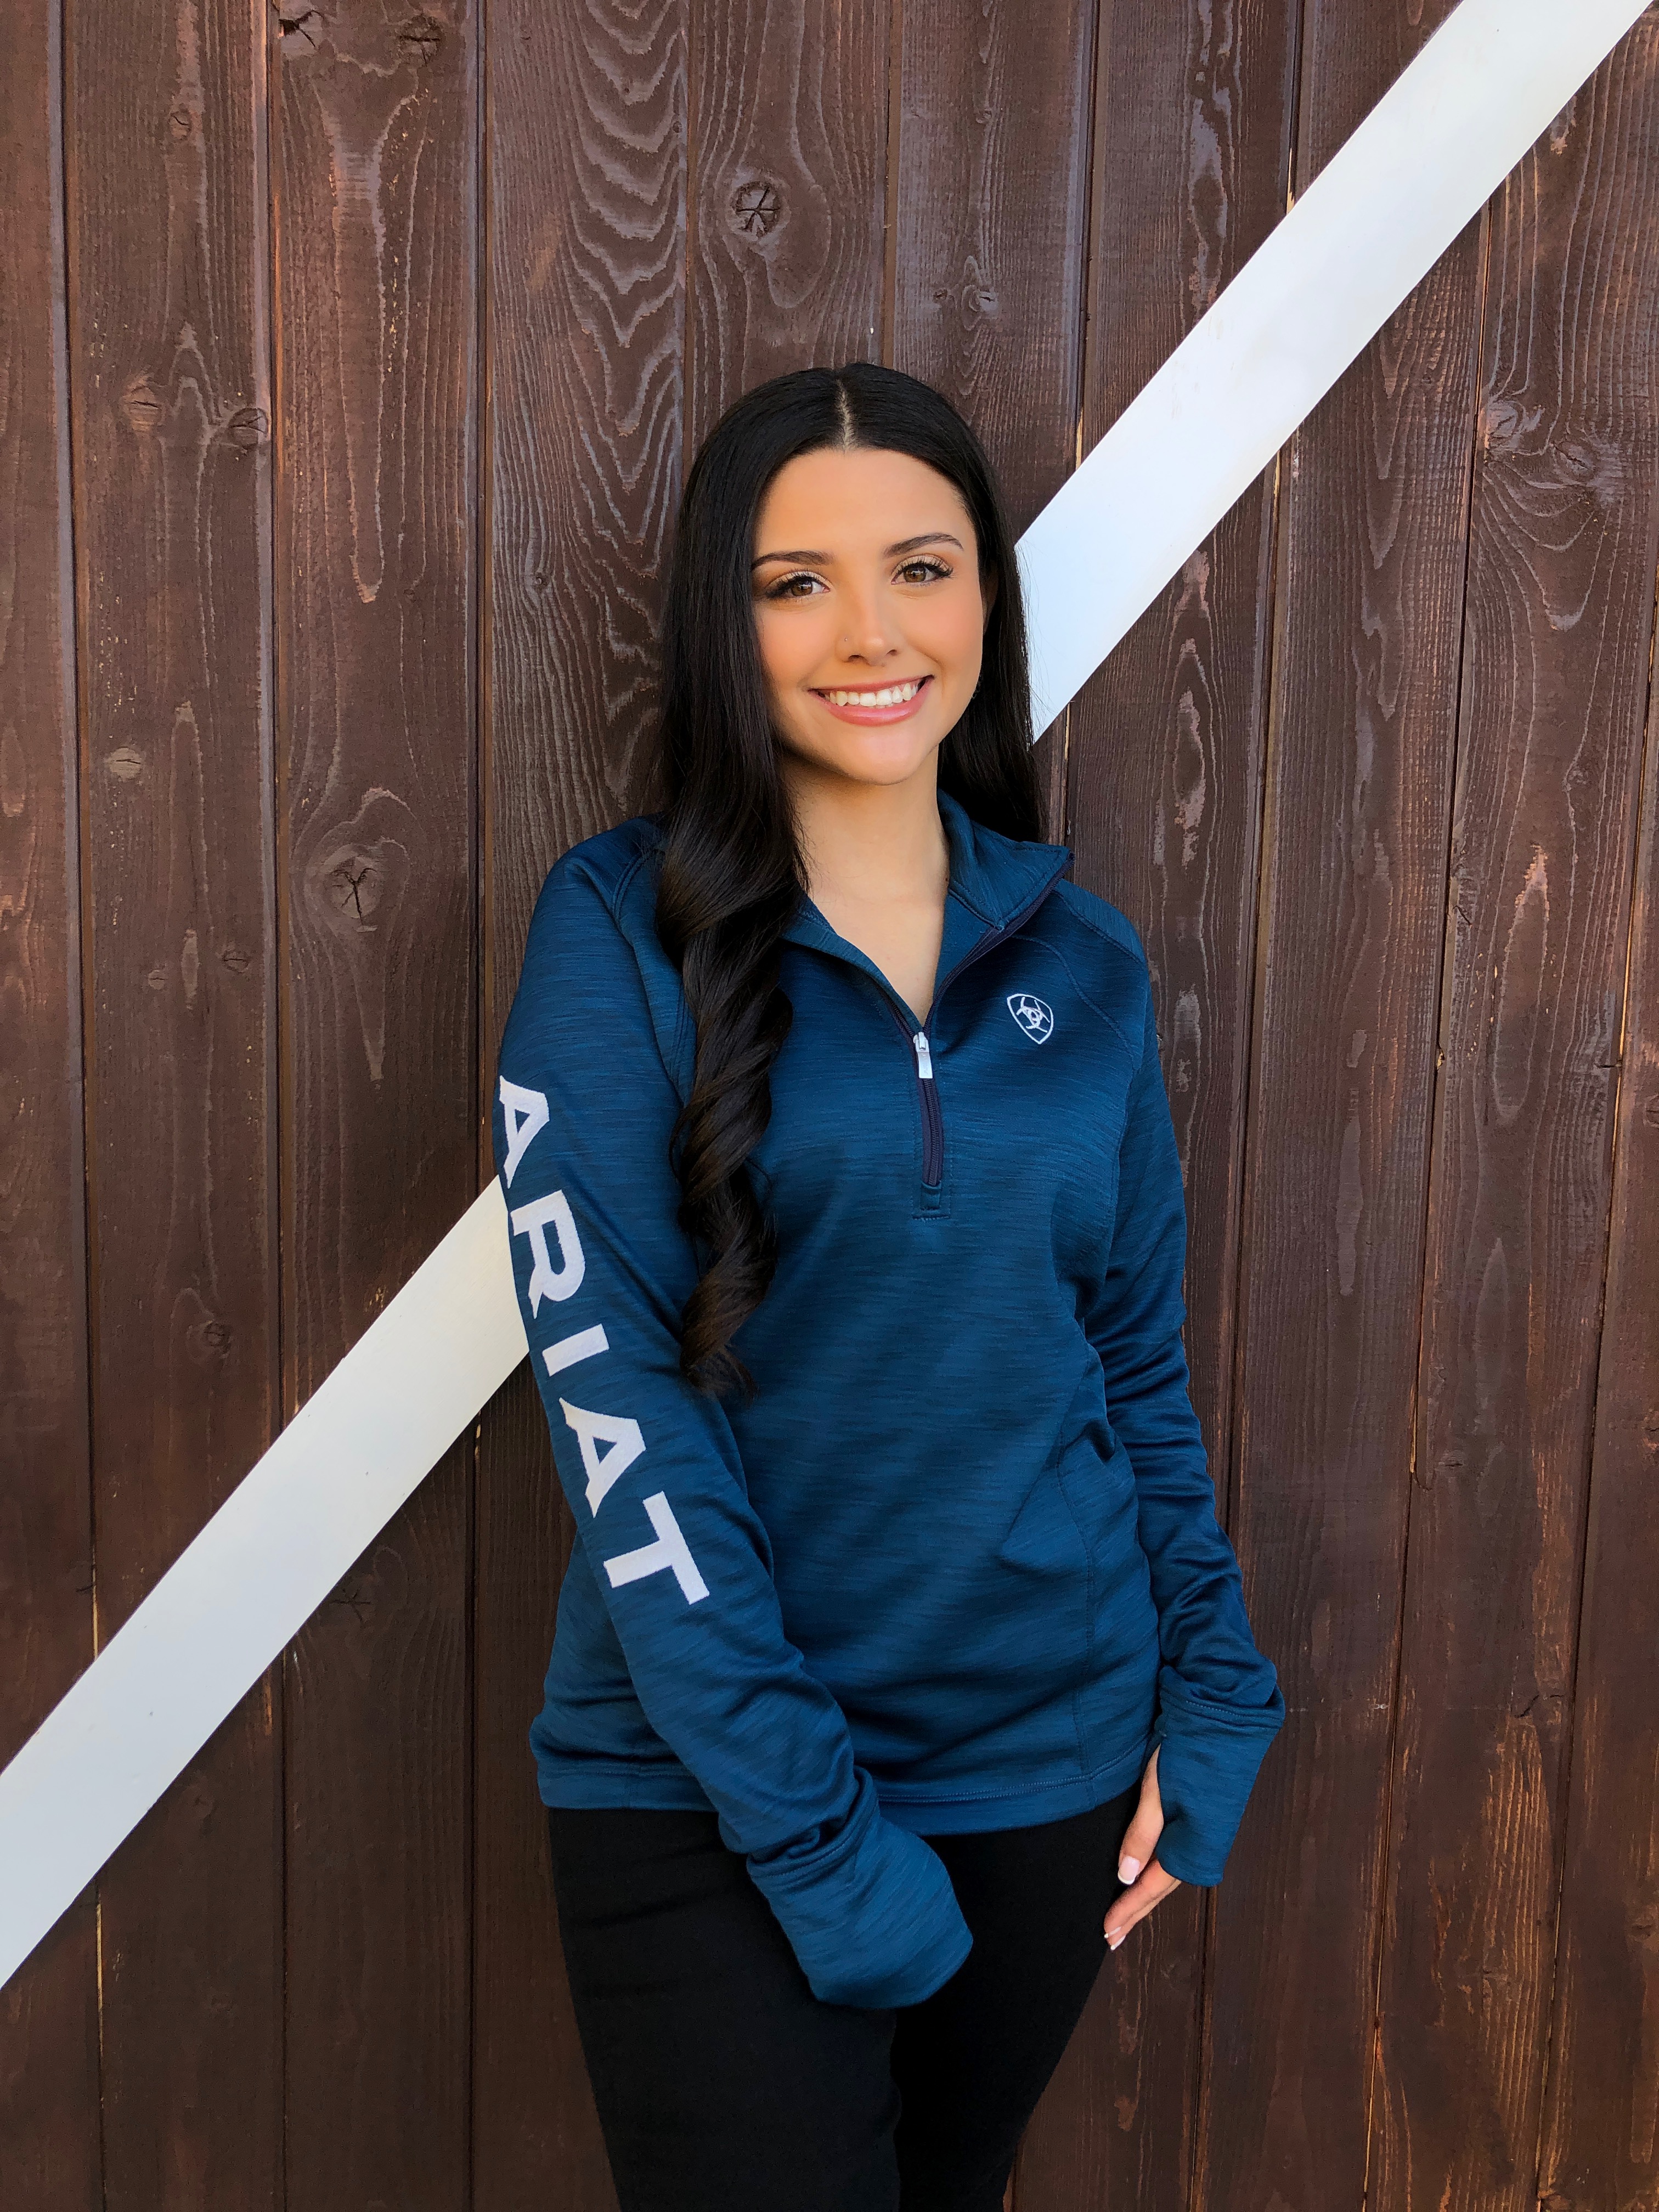 Ariat Women's Tek Team Half Zip Sweatshirt - Navy - Women's Small